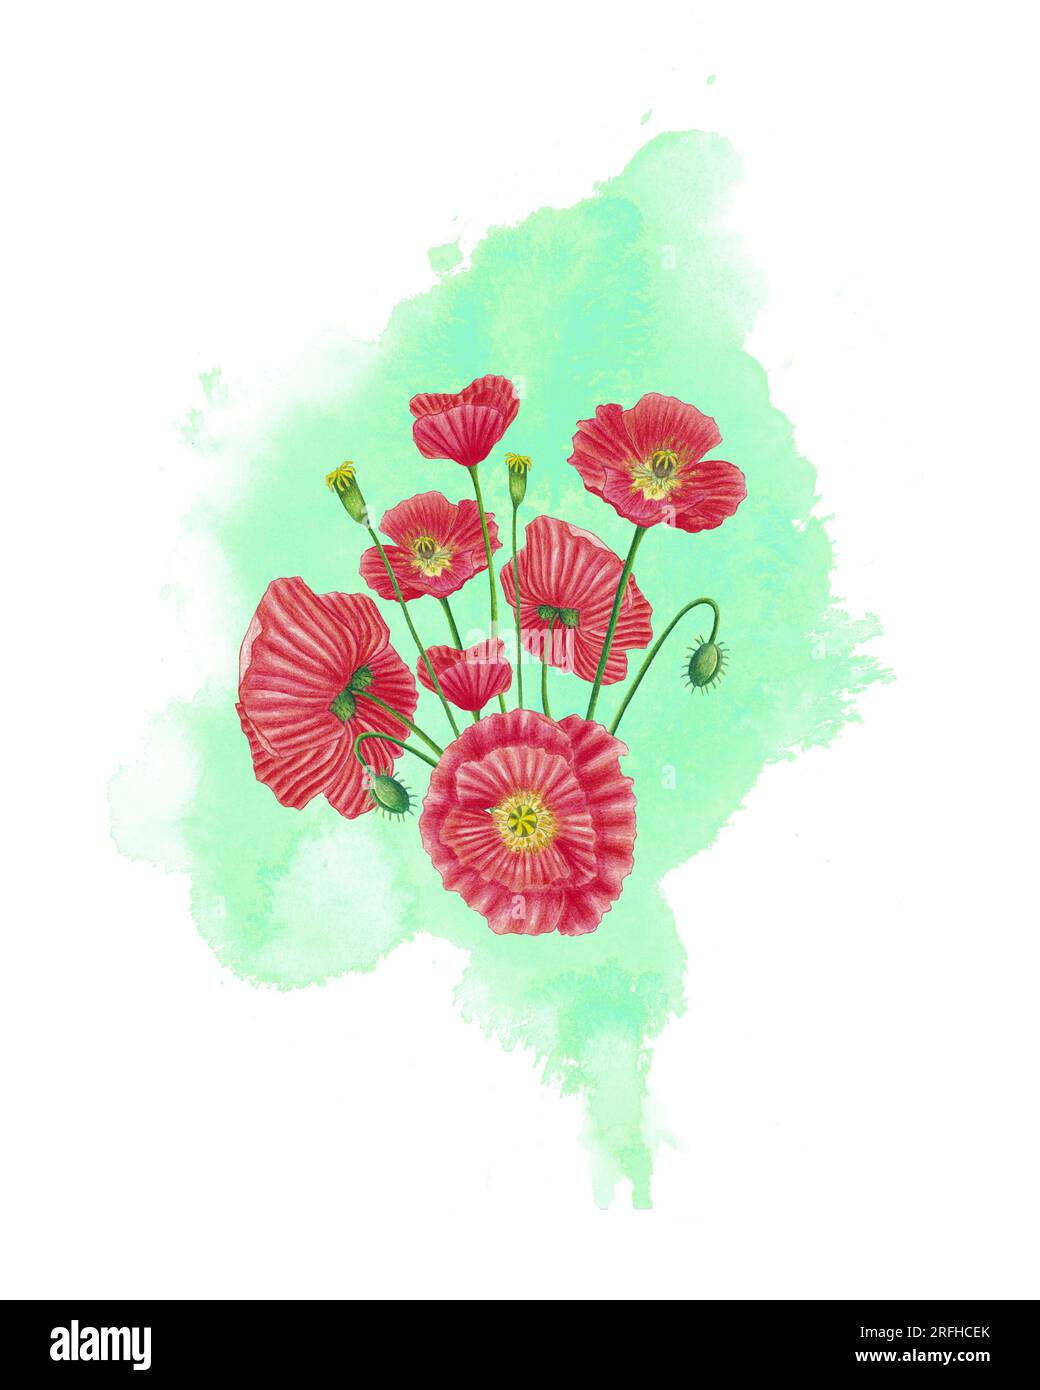 Composition de fleur de coquelicot rouge avec éclaboussure d'aquarelle verte. Carte de voeux et modèle de bannière, invitation, carte postale avec des fleurs de champ, bourgeon, graines Banque D'Images